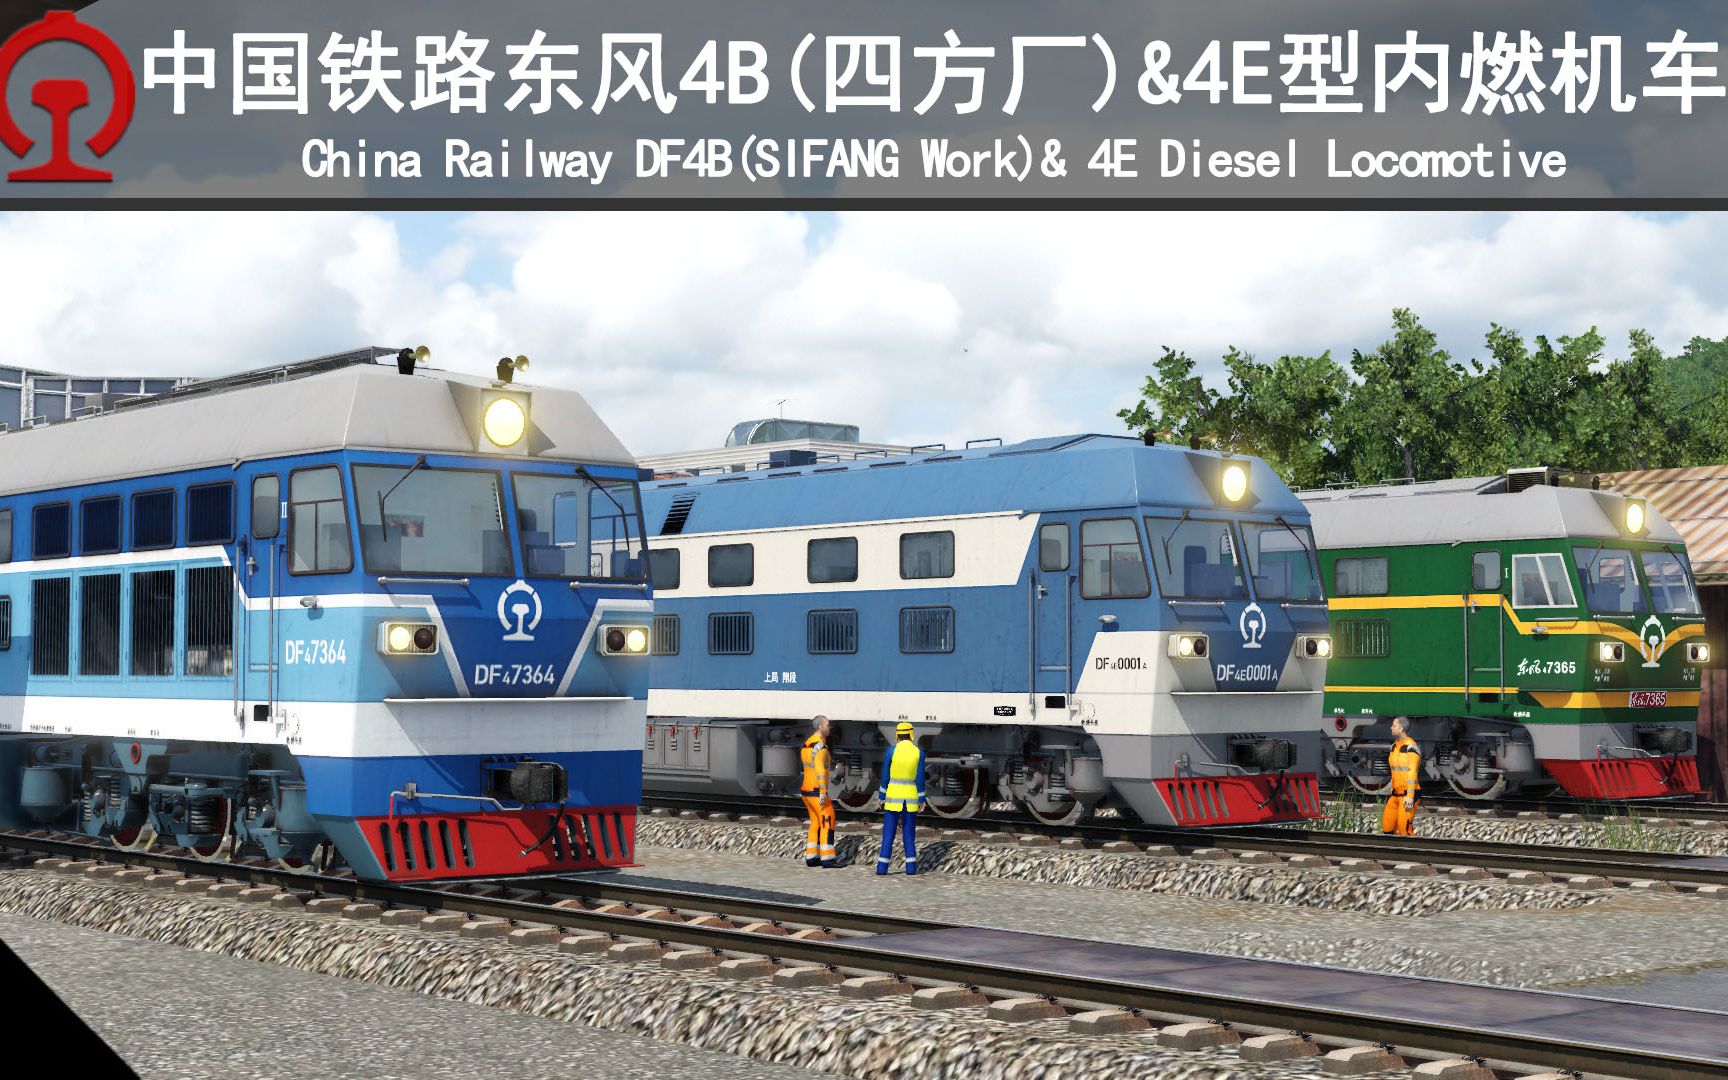 【狂热运输2】中国铁路东风4B(四方厂)&4E型内燃机车现已发布